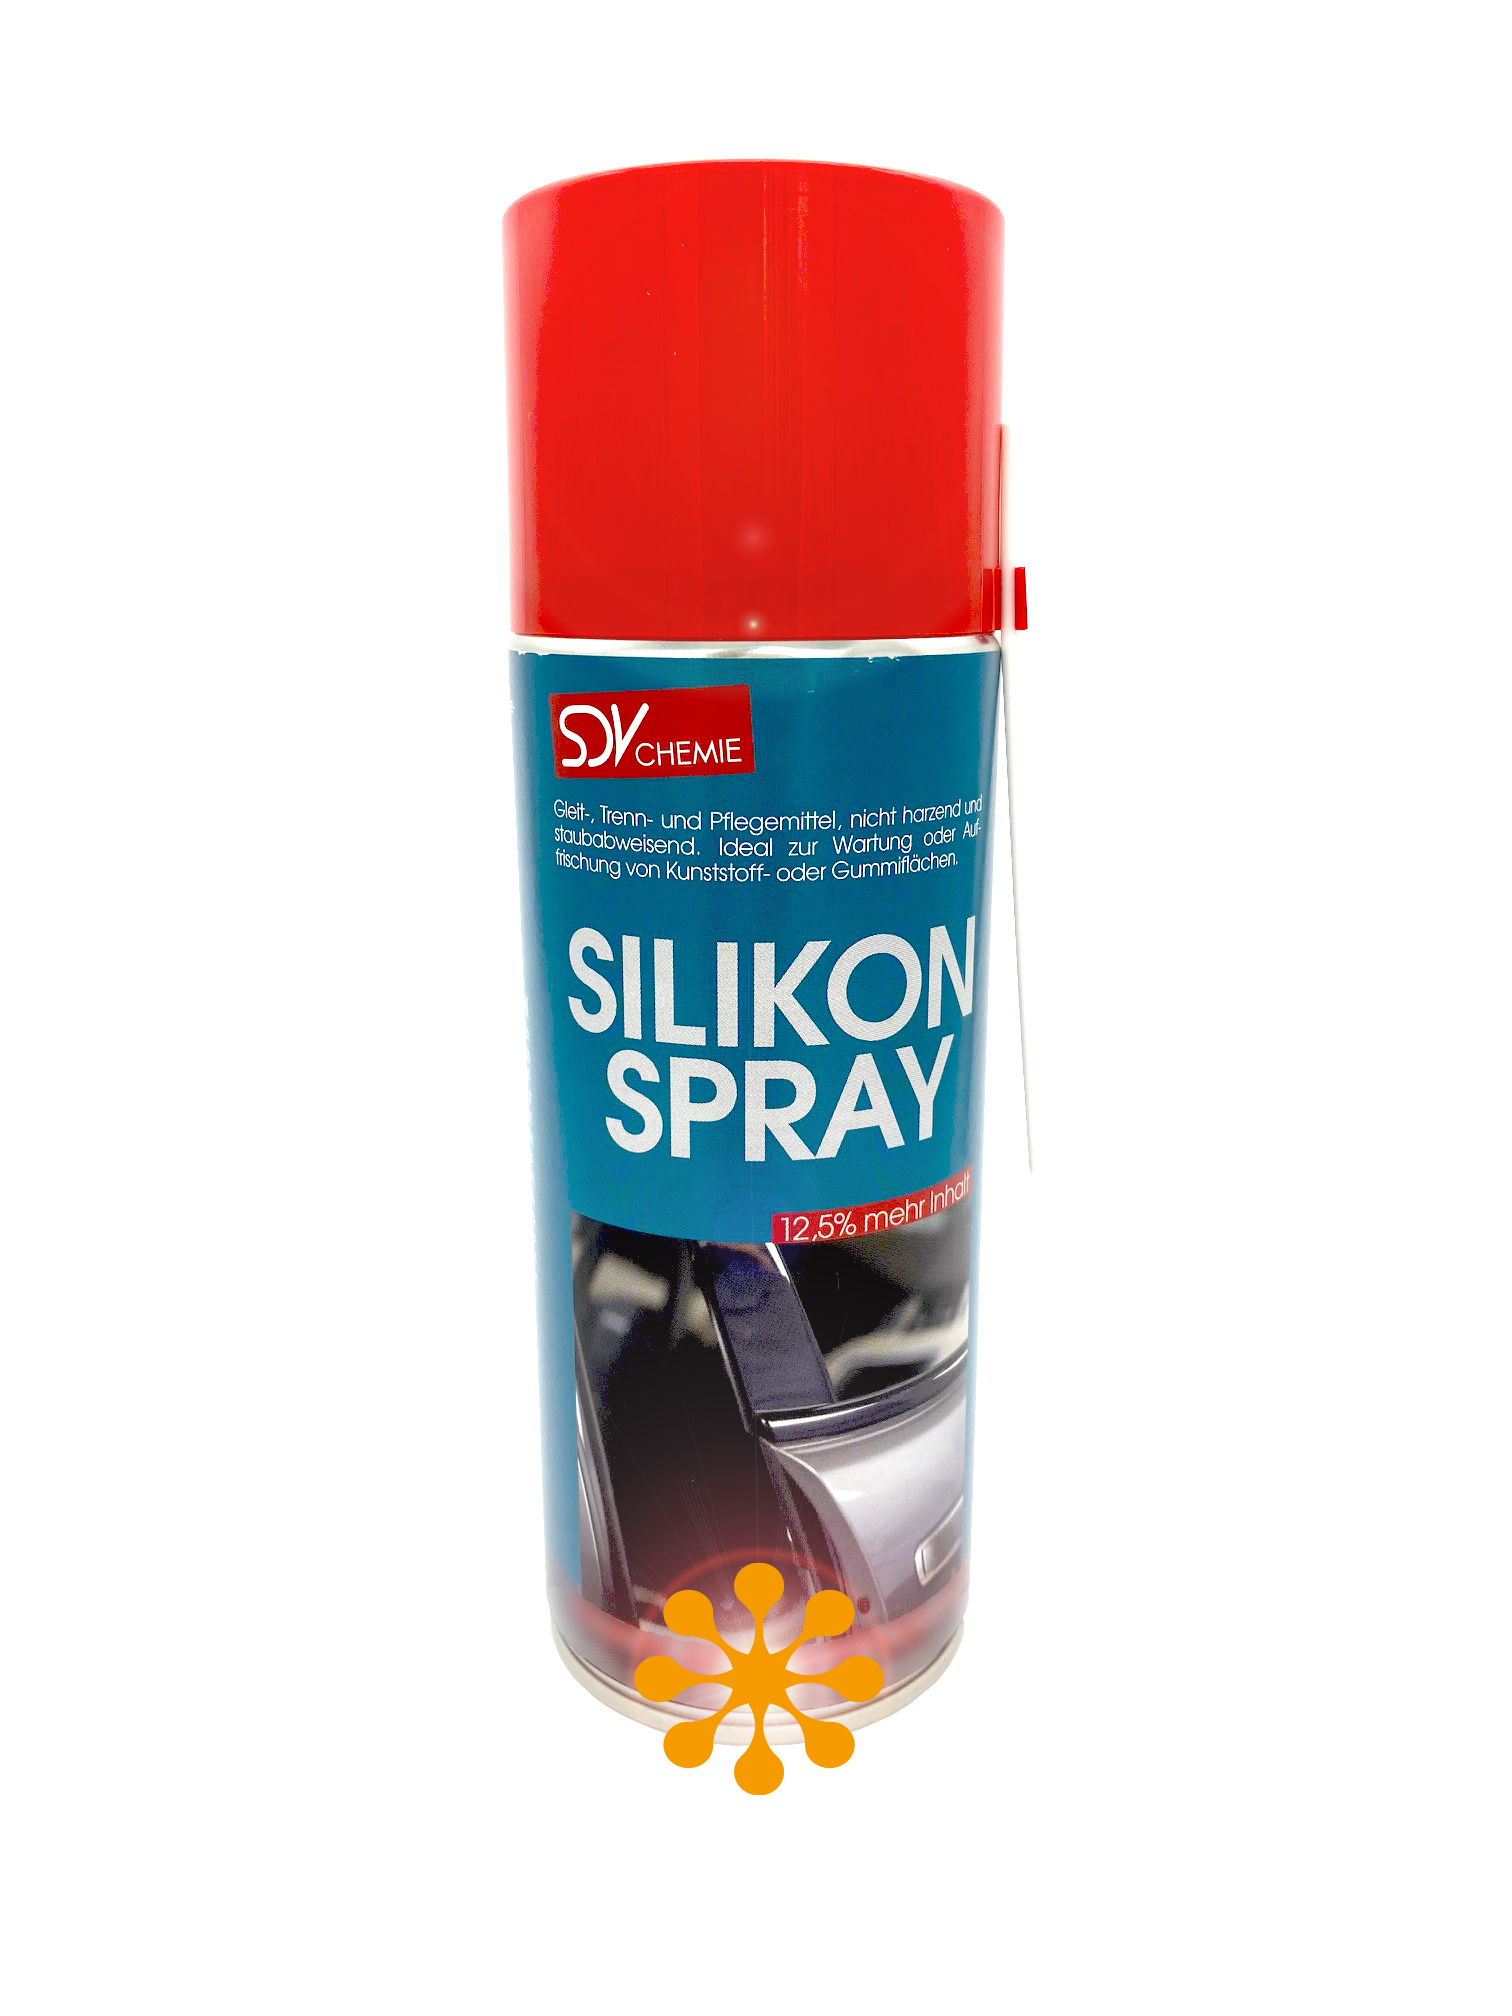 Silikon Spray für Bindegeräte bei KONTORplus zum Top-Preis erhältlich!